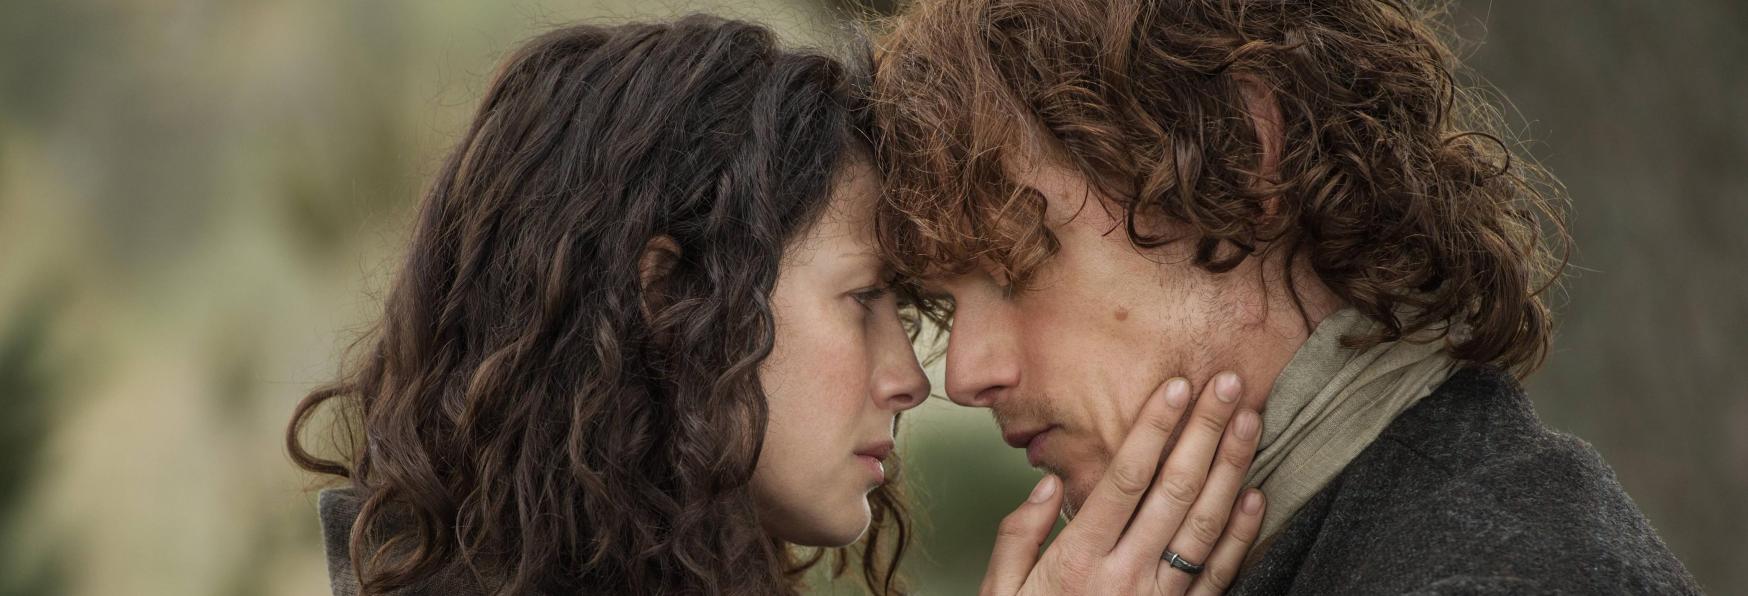 Outlander 6: un Post su Instagram rivela la Data di Uscita della Nuova stagione